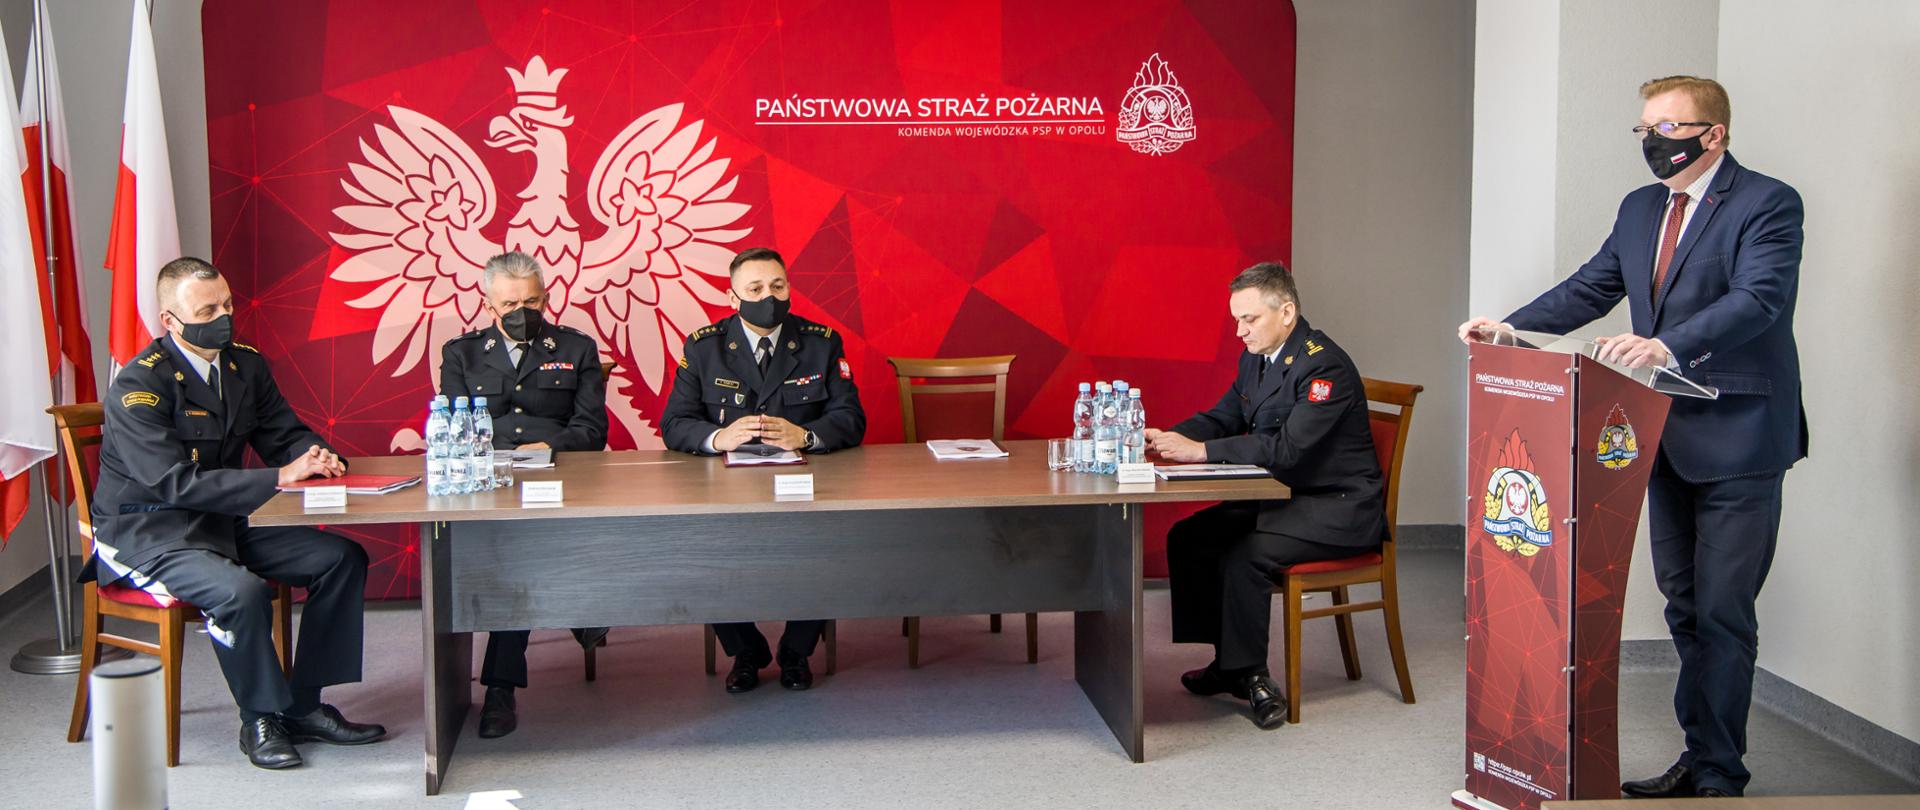 Odprawa z kadrą kierowniczą PSP Opole. Na zdjęciu 4 mężczyzn zasiadających za stołem, obok - po prawej stronie kadru, mównica za którą stoi i przemawia wicewojewoda opolski 